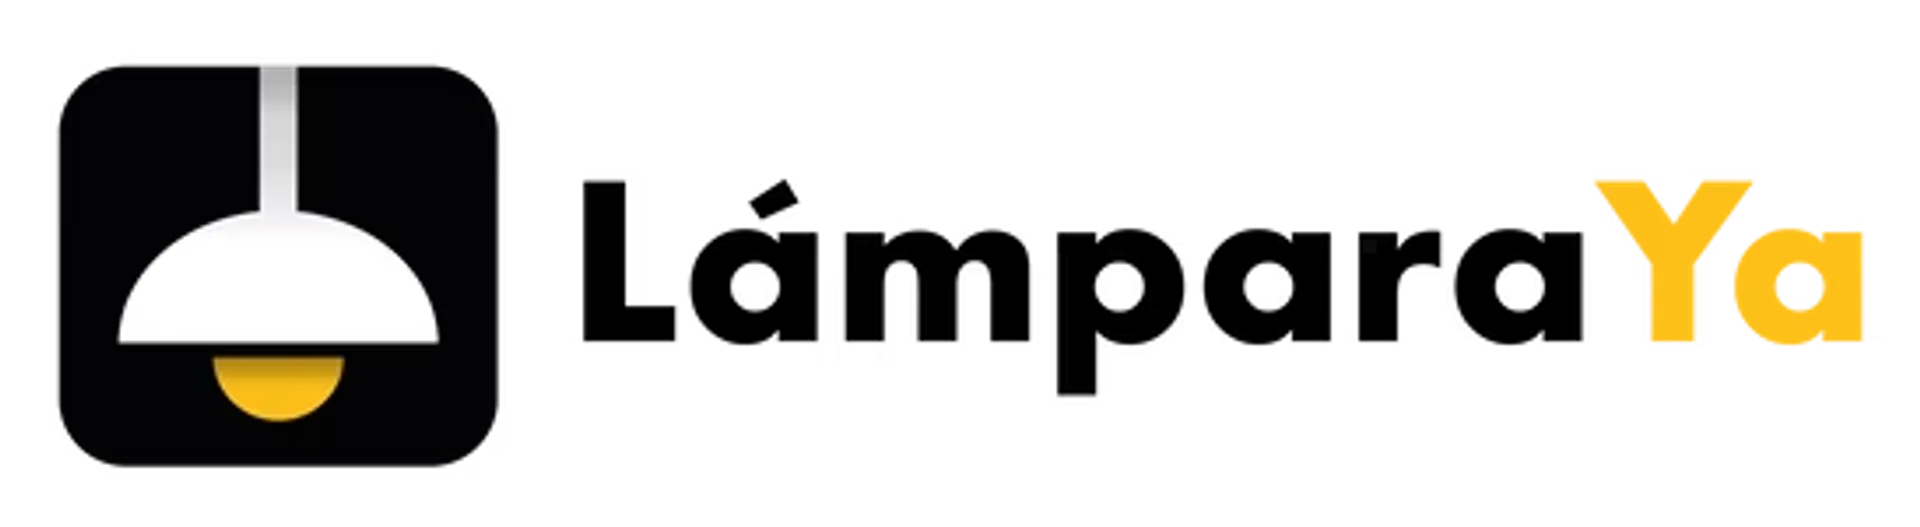 LÁMPARA YA logo